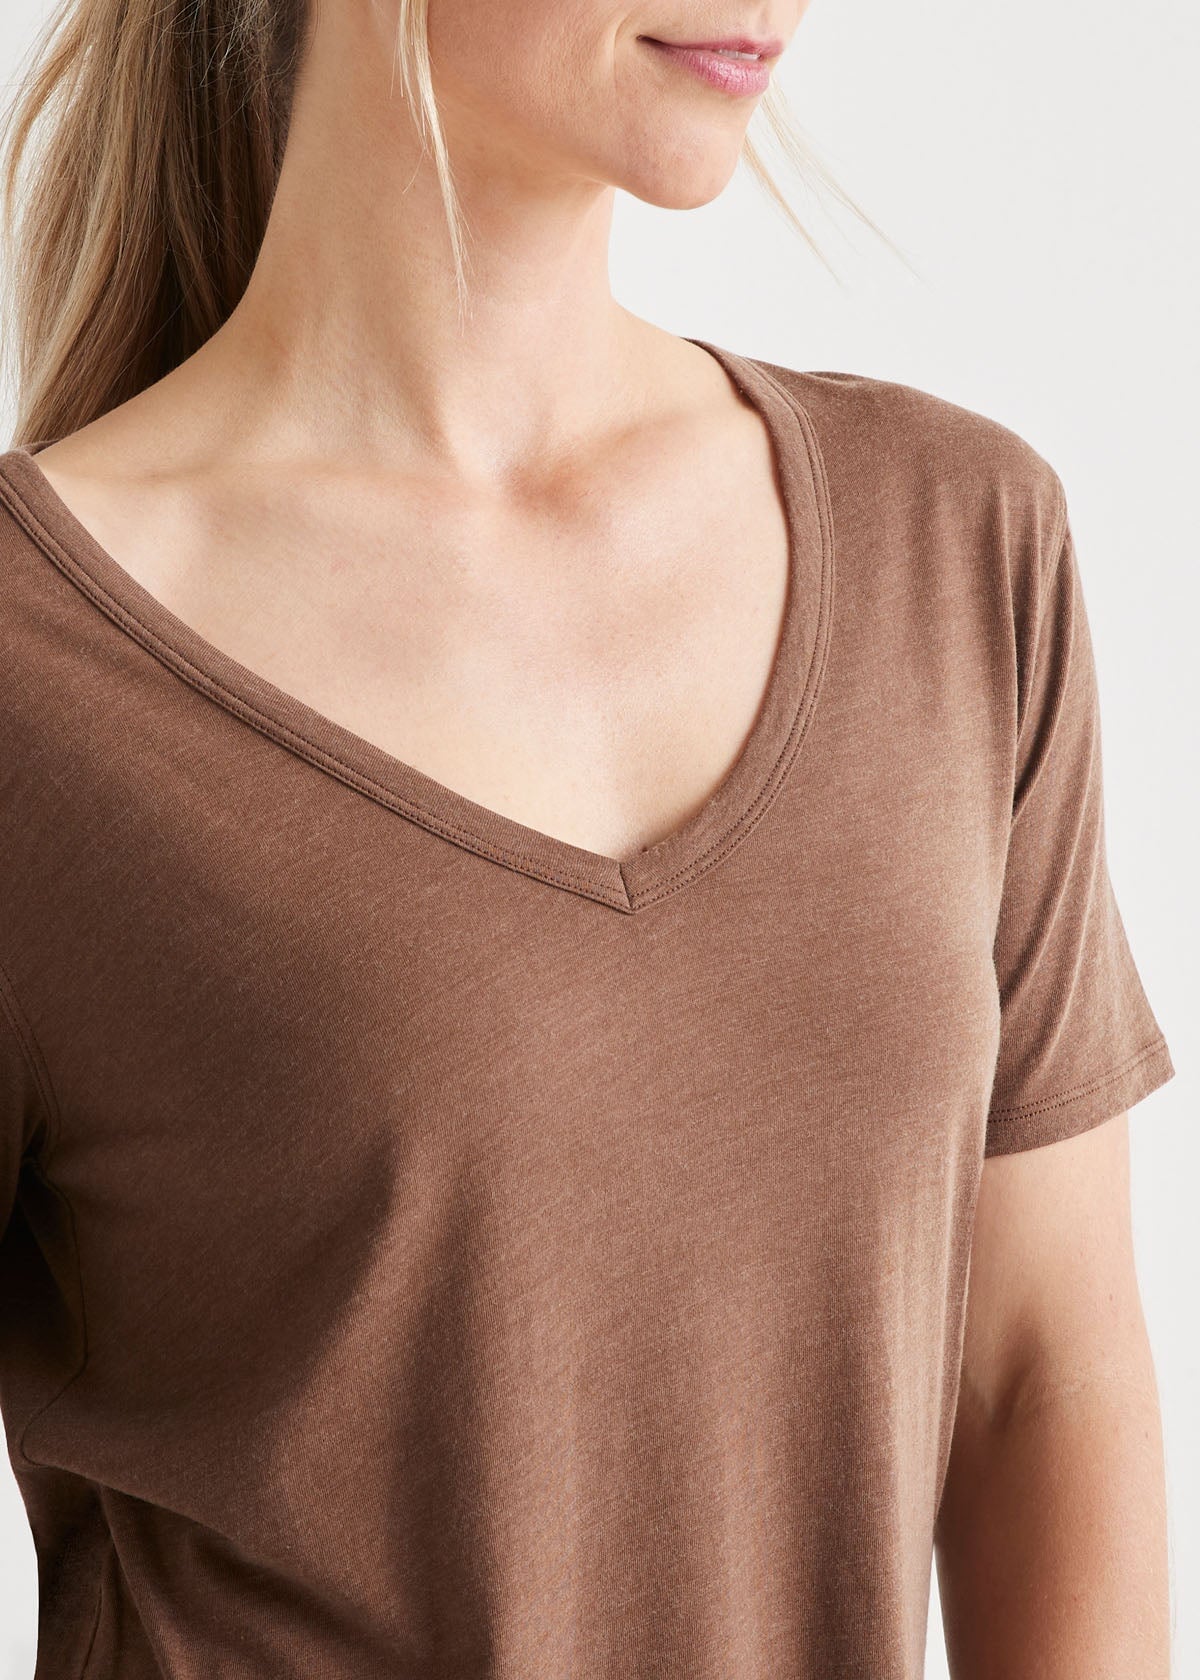 womens soft lightweight brown v-neck t-shirt v-neck close up